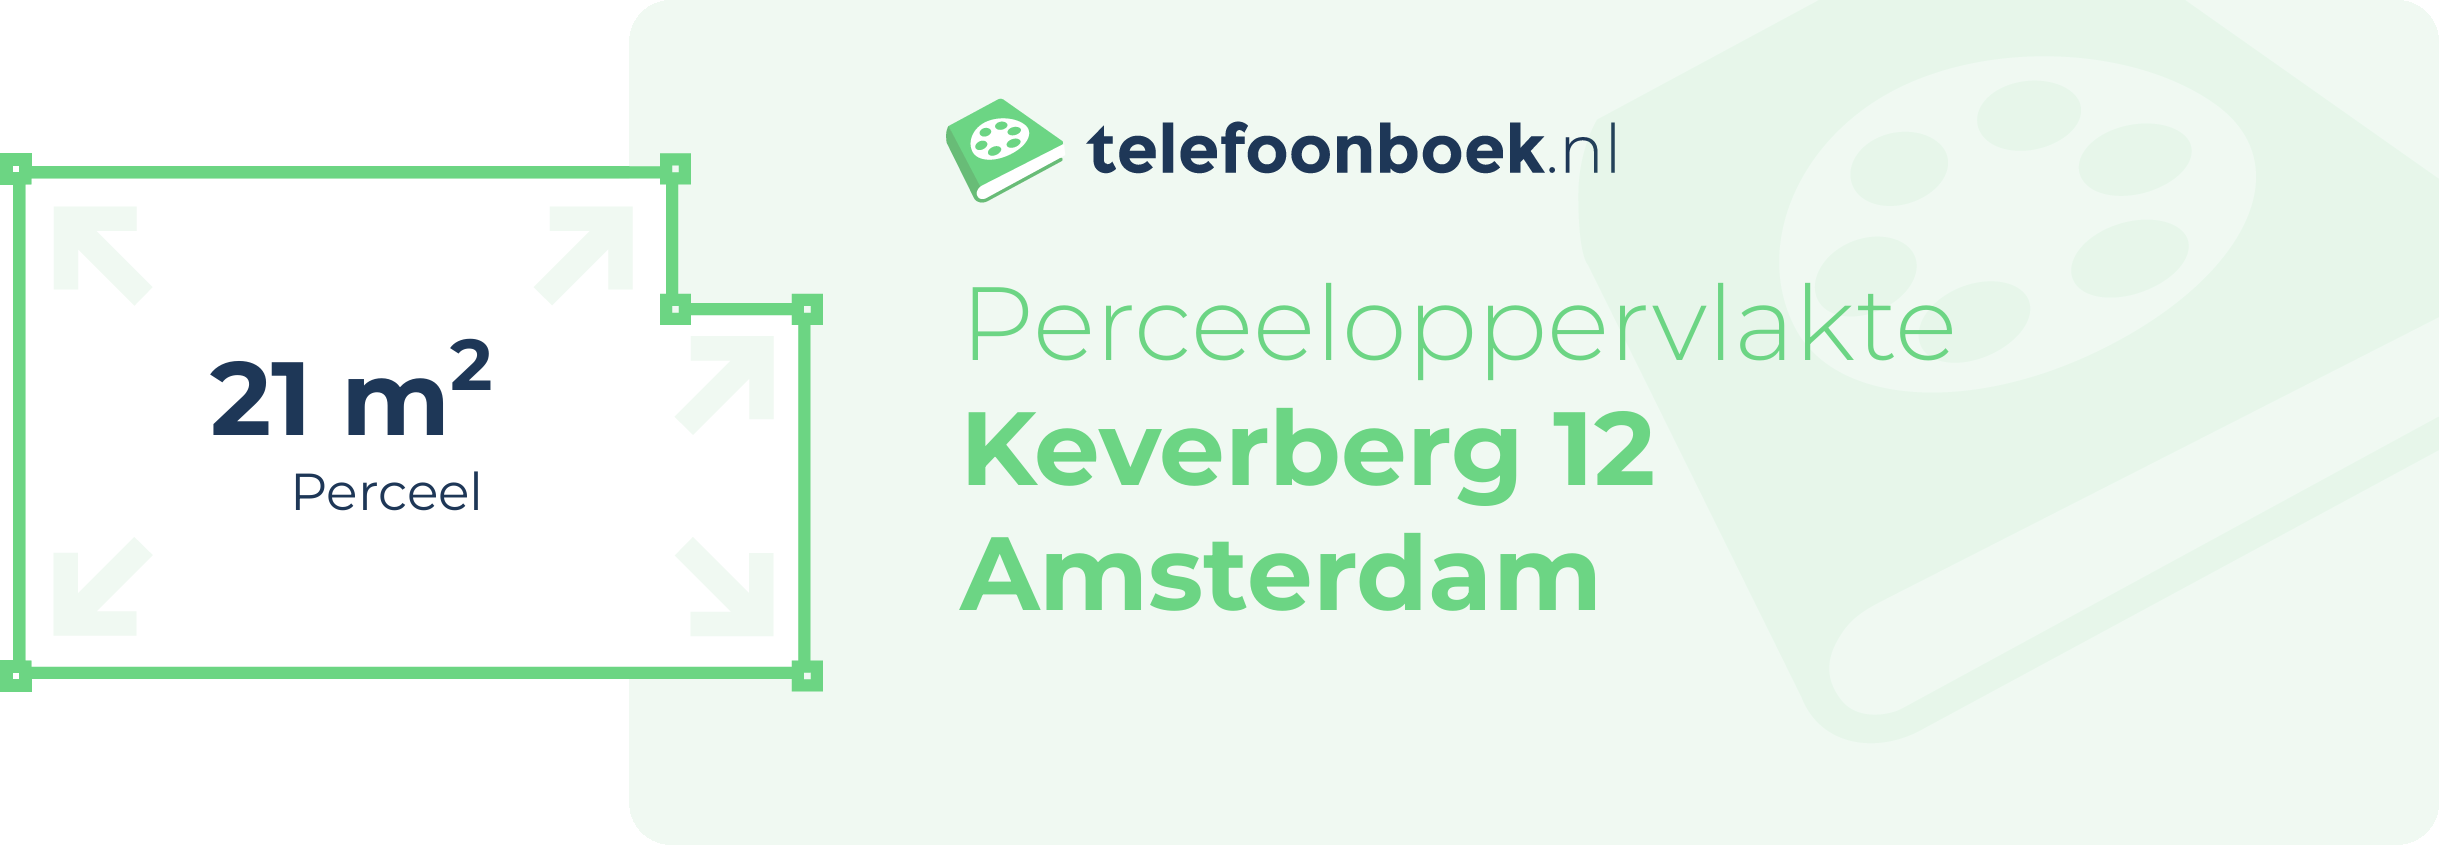 Perceeloppervlakte Keverberg 12 Amsterdam